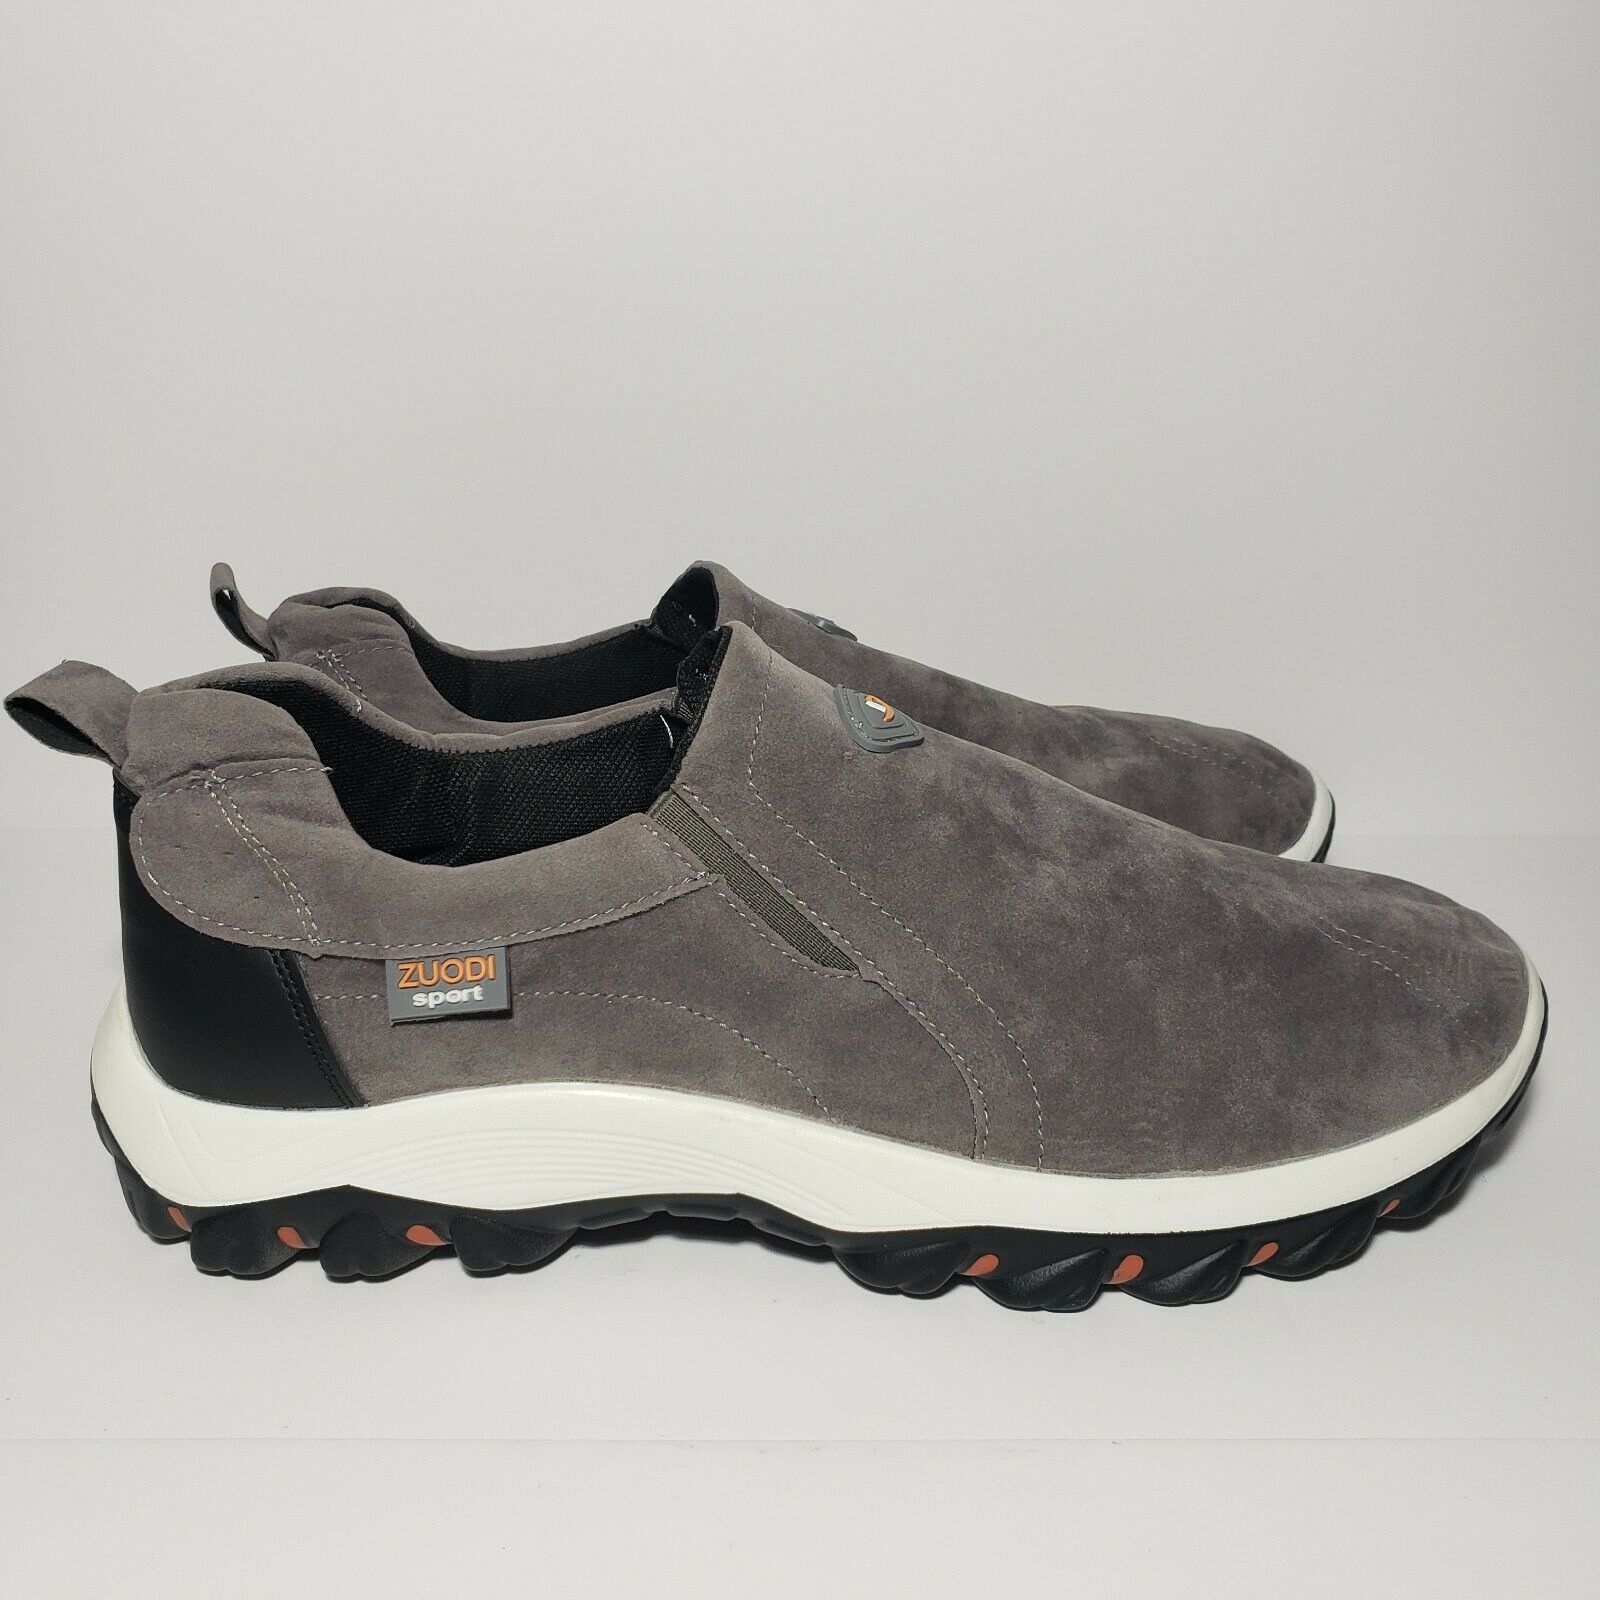 Zuodi Sport Men's Slip-On Walking Shoes Gray Low Top Lightweight Size 11